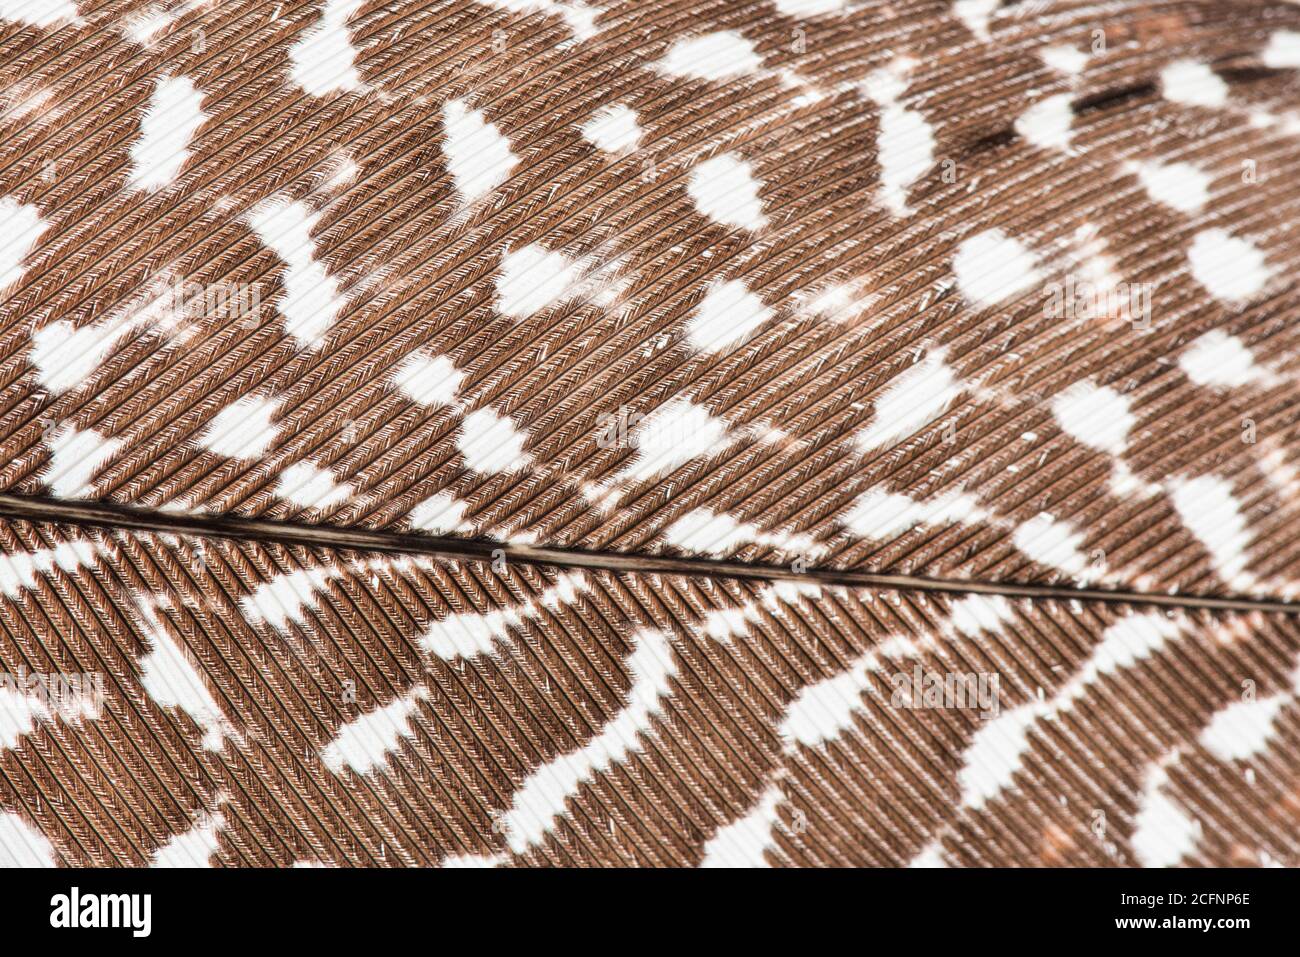 Ein hochauflösendes Makro einer Vogelfeder, speziell das eines großen Argus-Fasans, das die Anatomie der Feder im Detail zeigt. Stockfoto